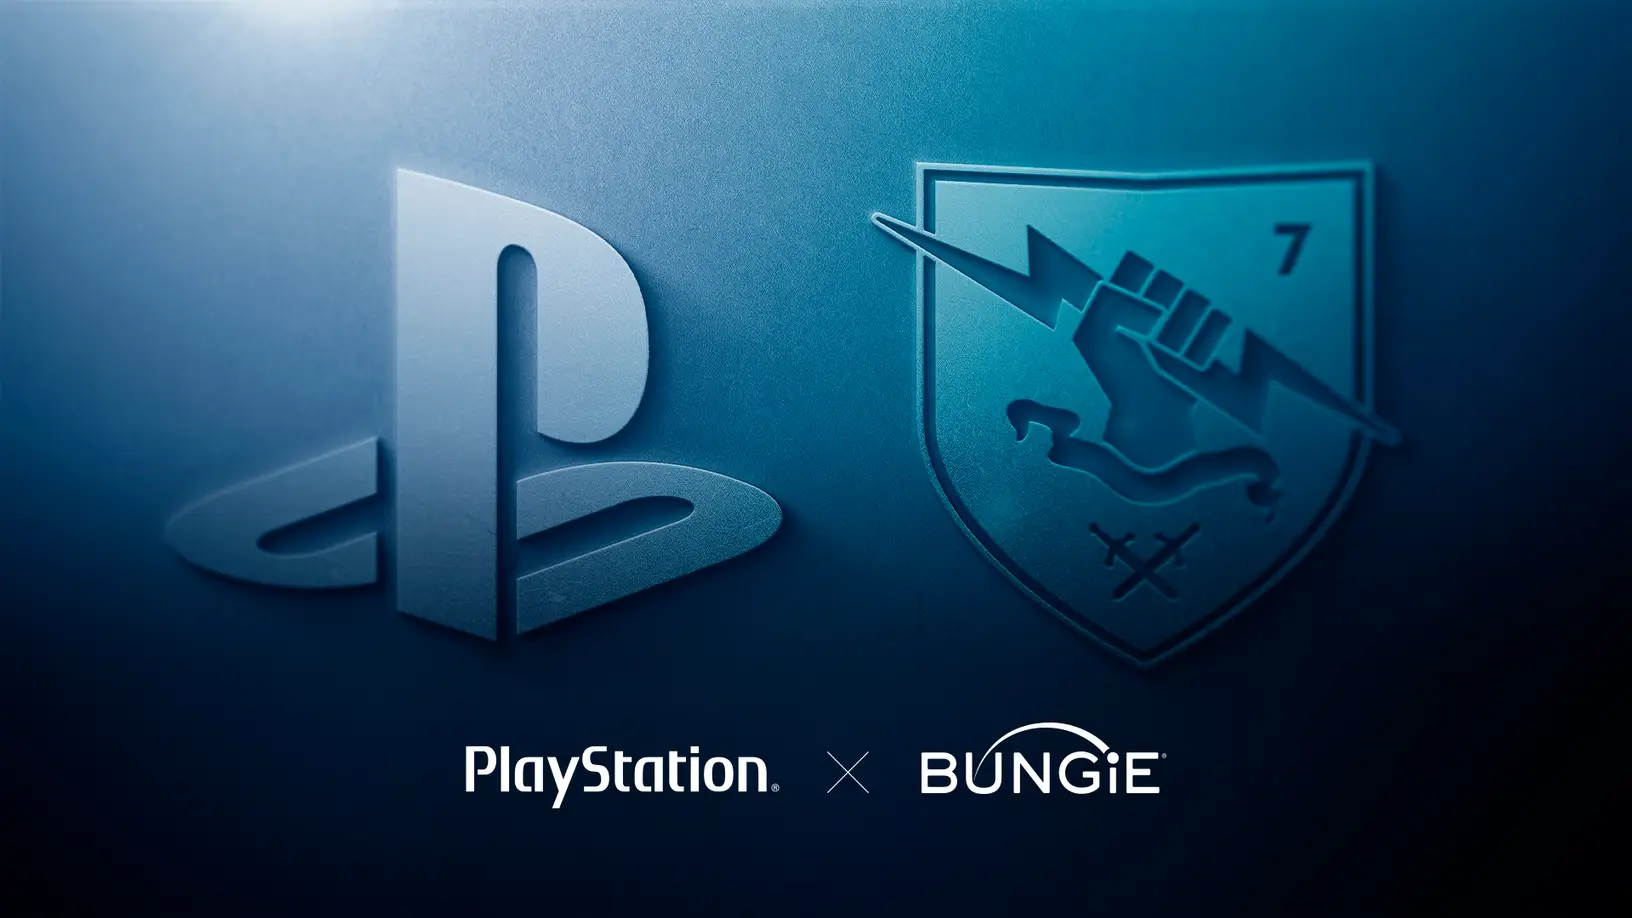 Känd analytiker: Sony har "betalat alldeles för mycket" för Bungie